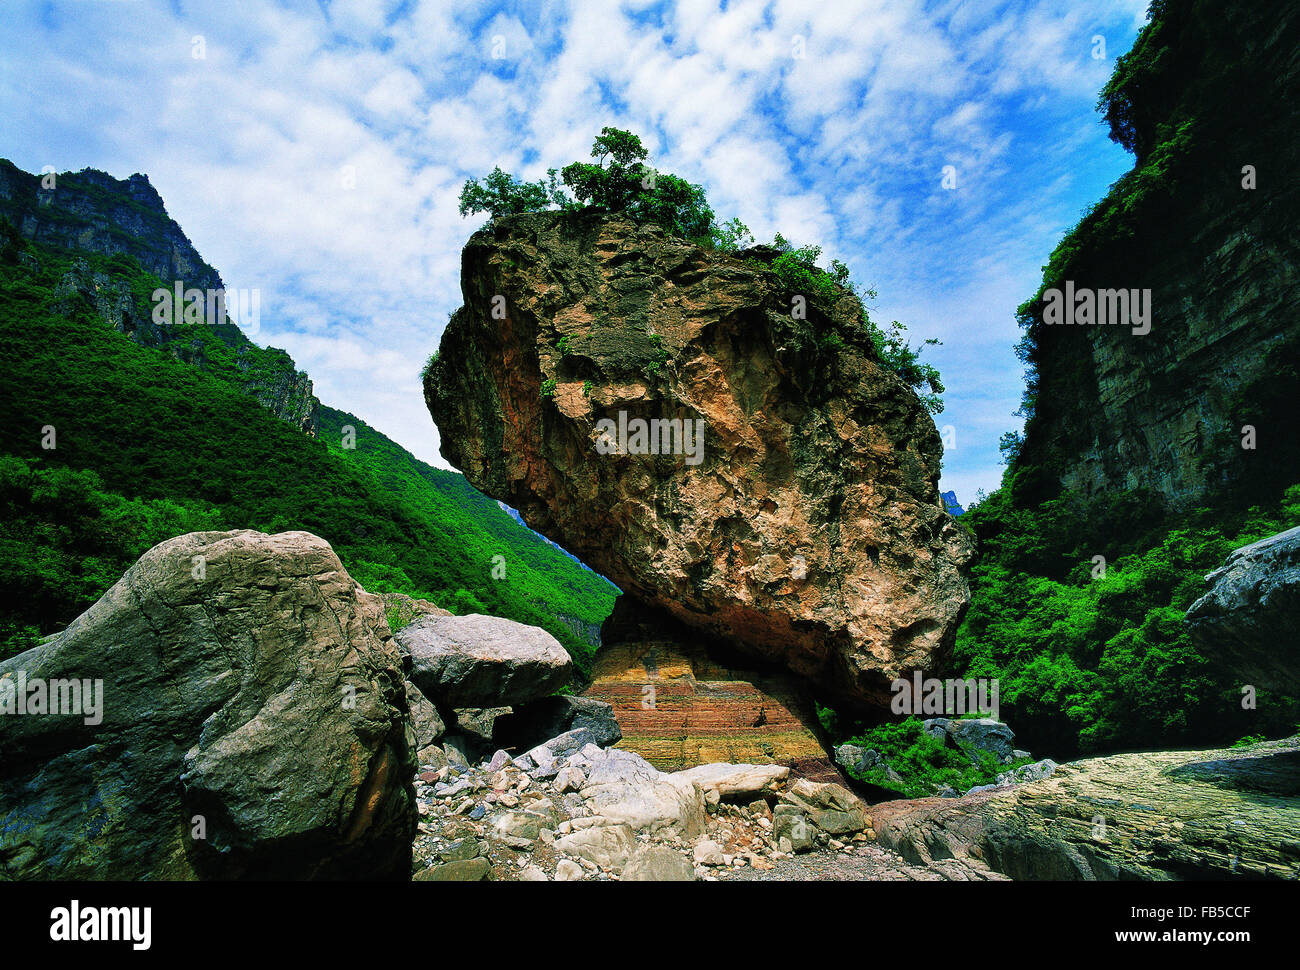 Xiuwu County Jiaozuo City Henan Province China Stock Photo